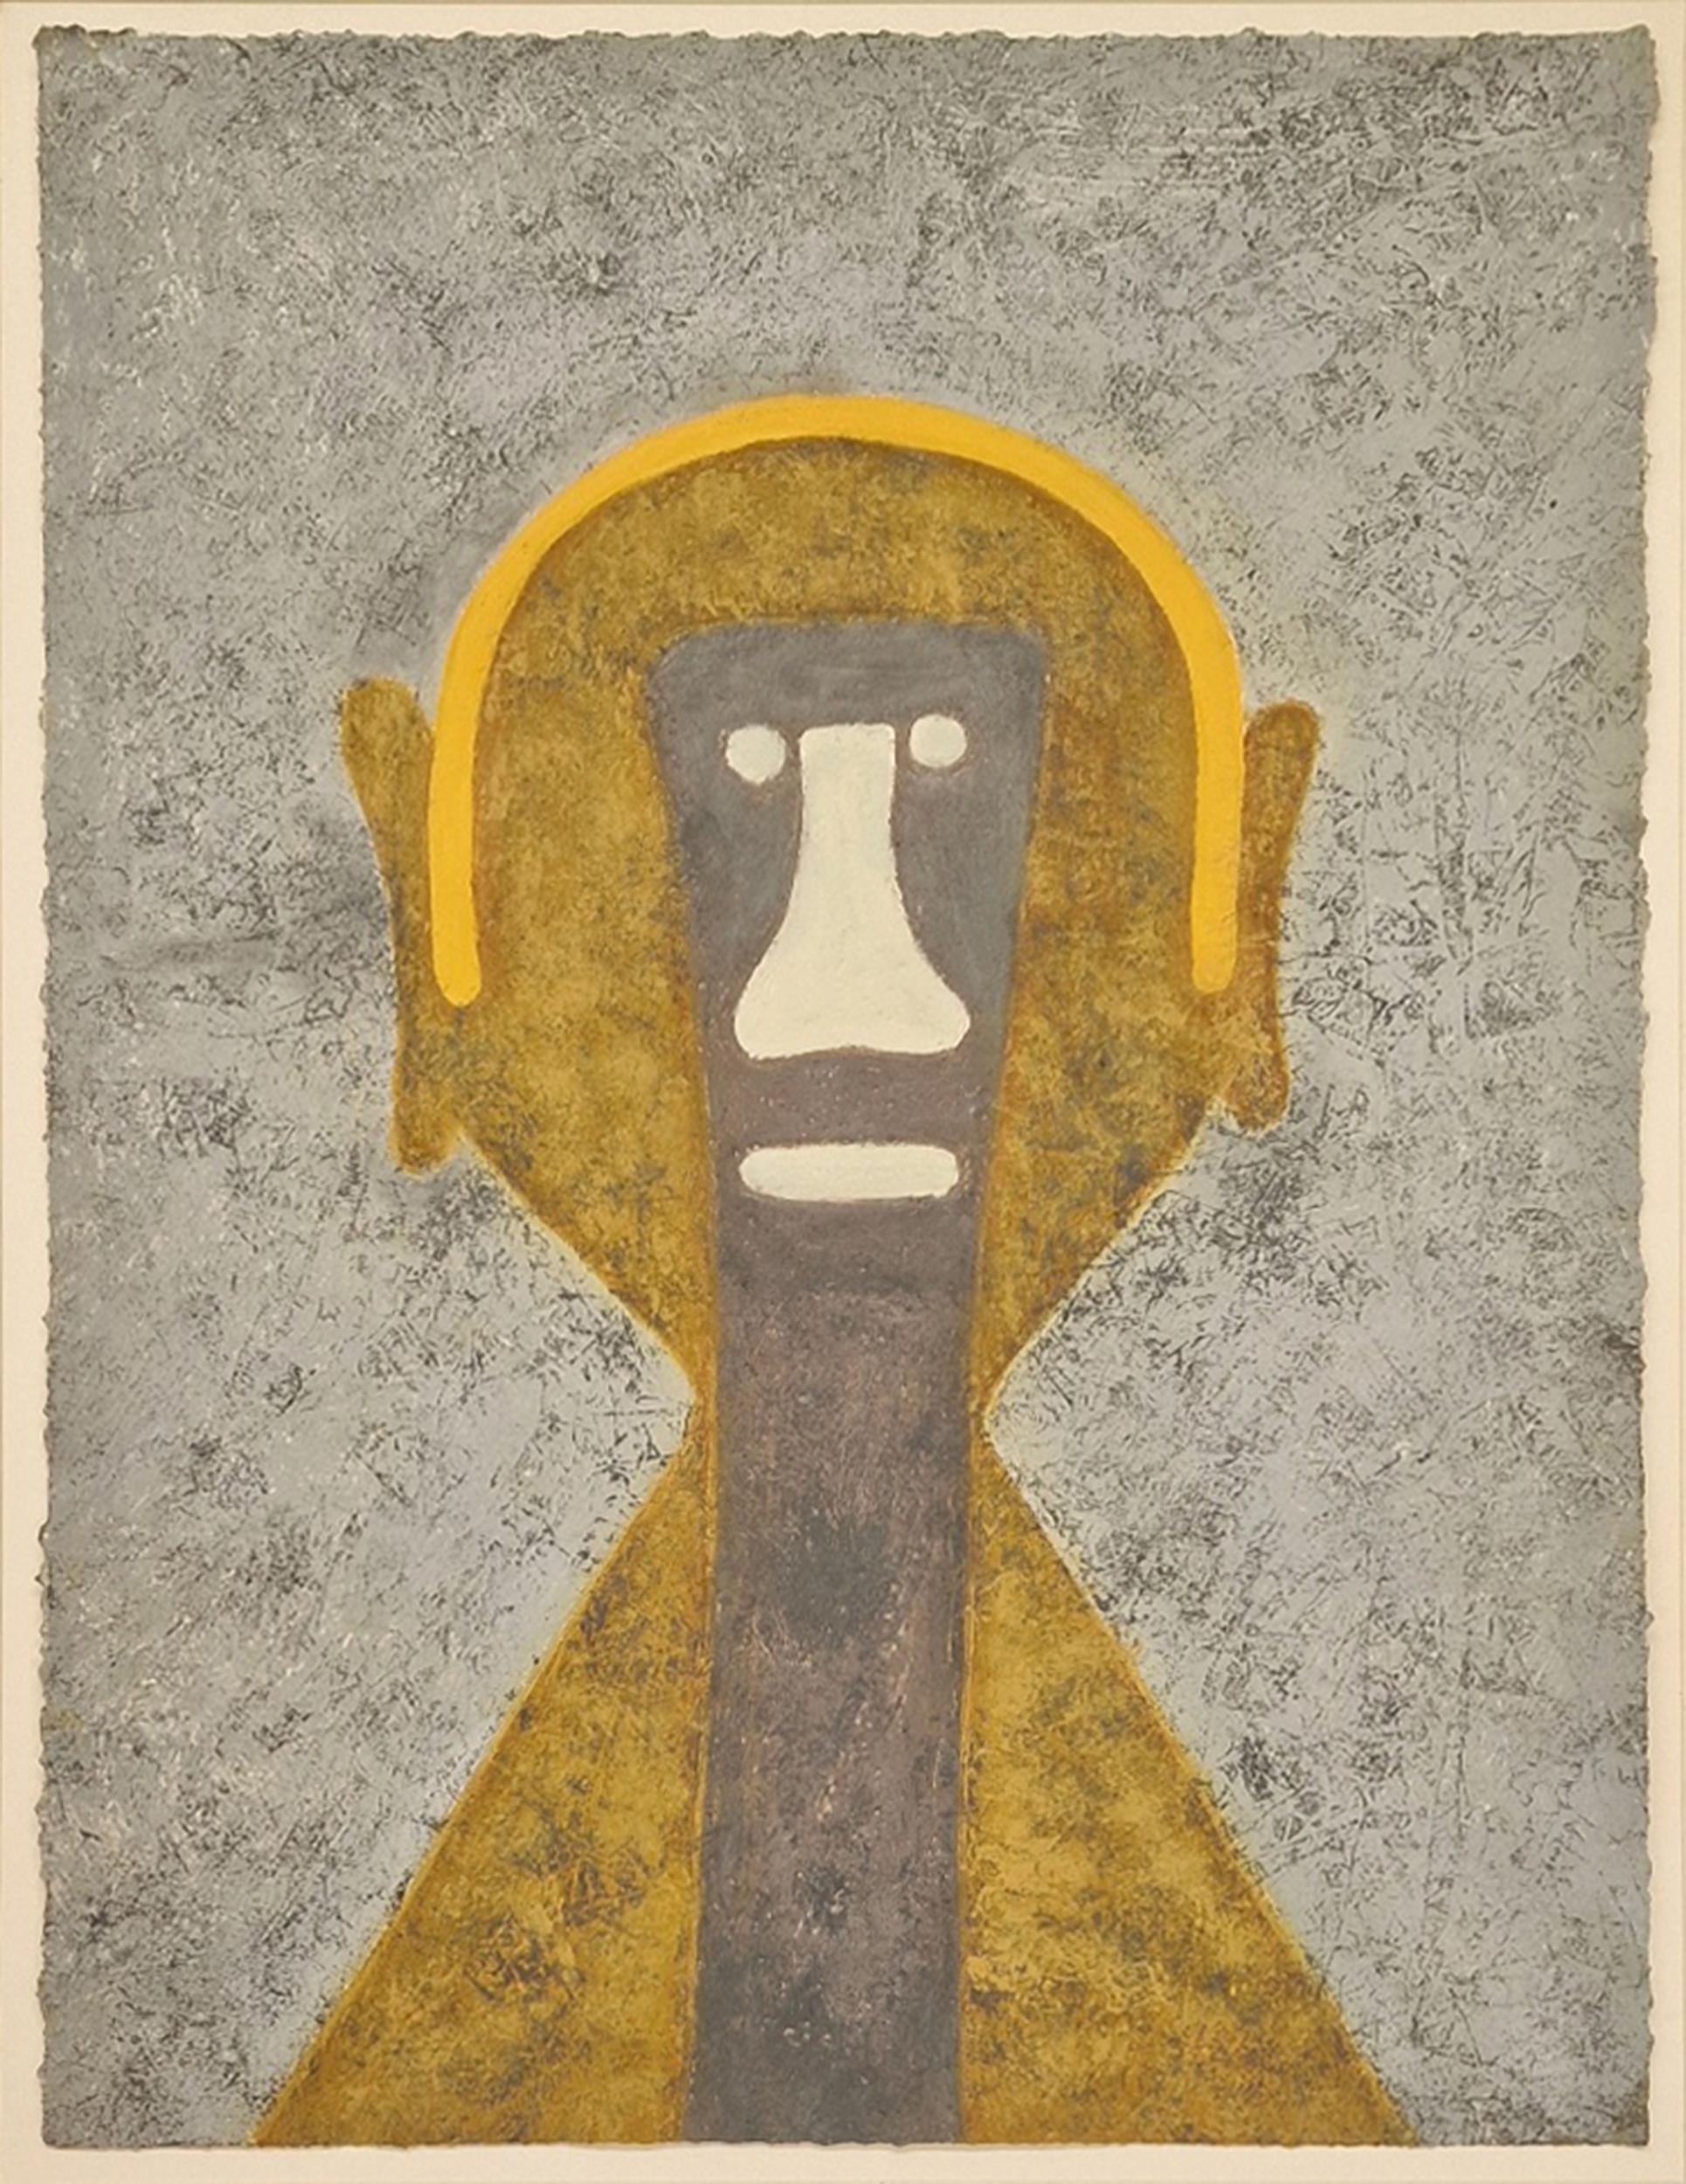 Gravure surréaliste de l'artiste mexicain Rufino Tamayo représentant une simple figure jaune sur un fond gris, fixant le spectateur avec des yeux blancs perçants. Cette pièce est l'un des 5 tirages HC non numérotés d'un tirage de 99 éditions